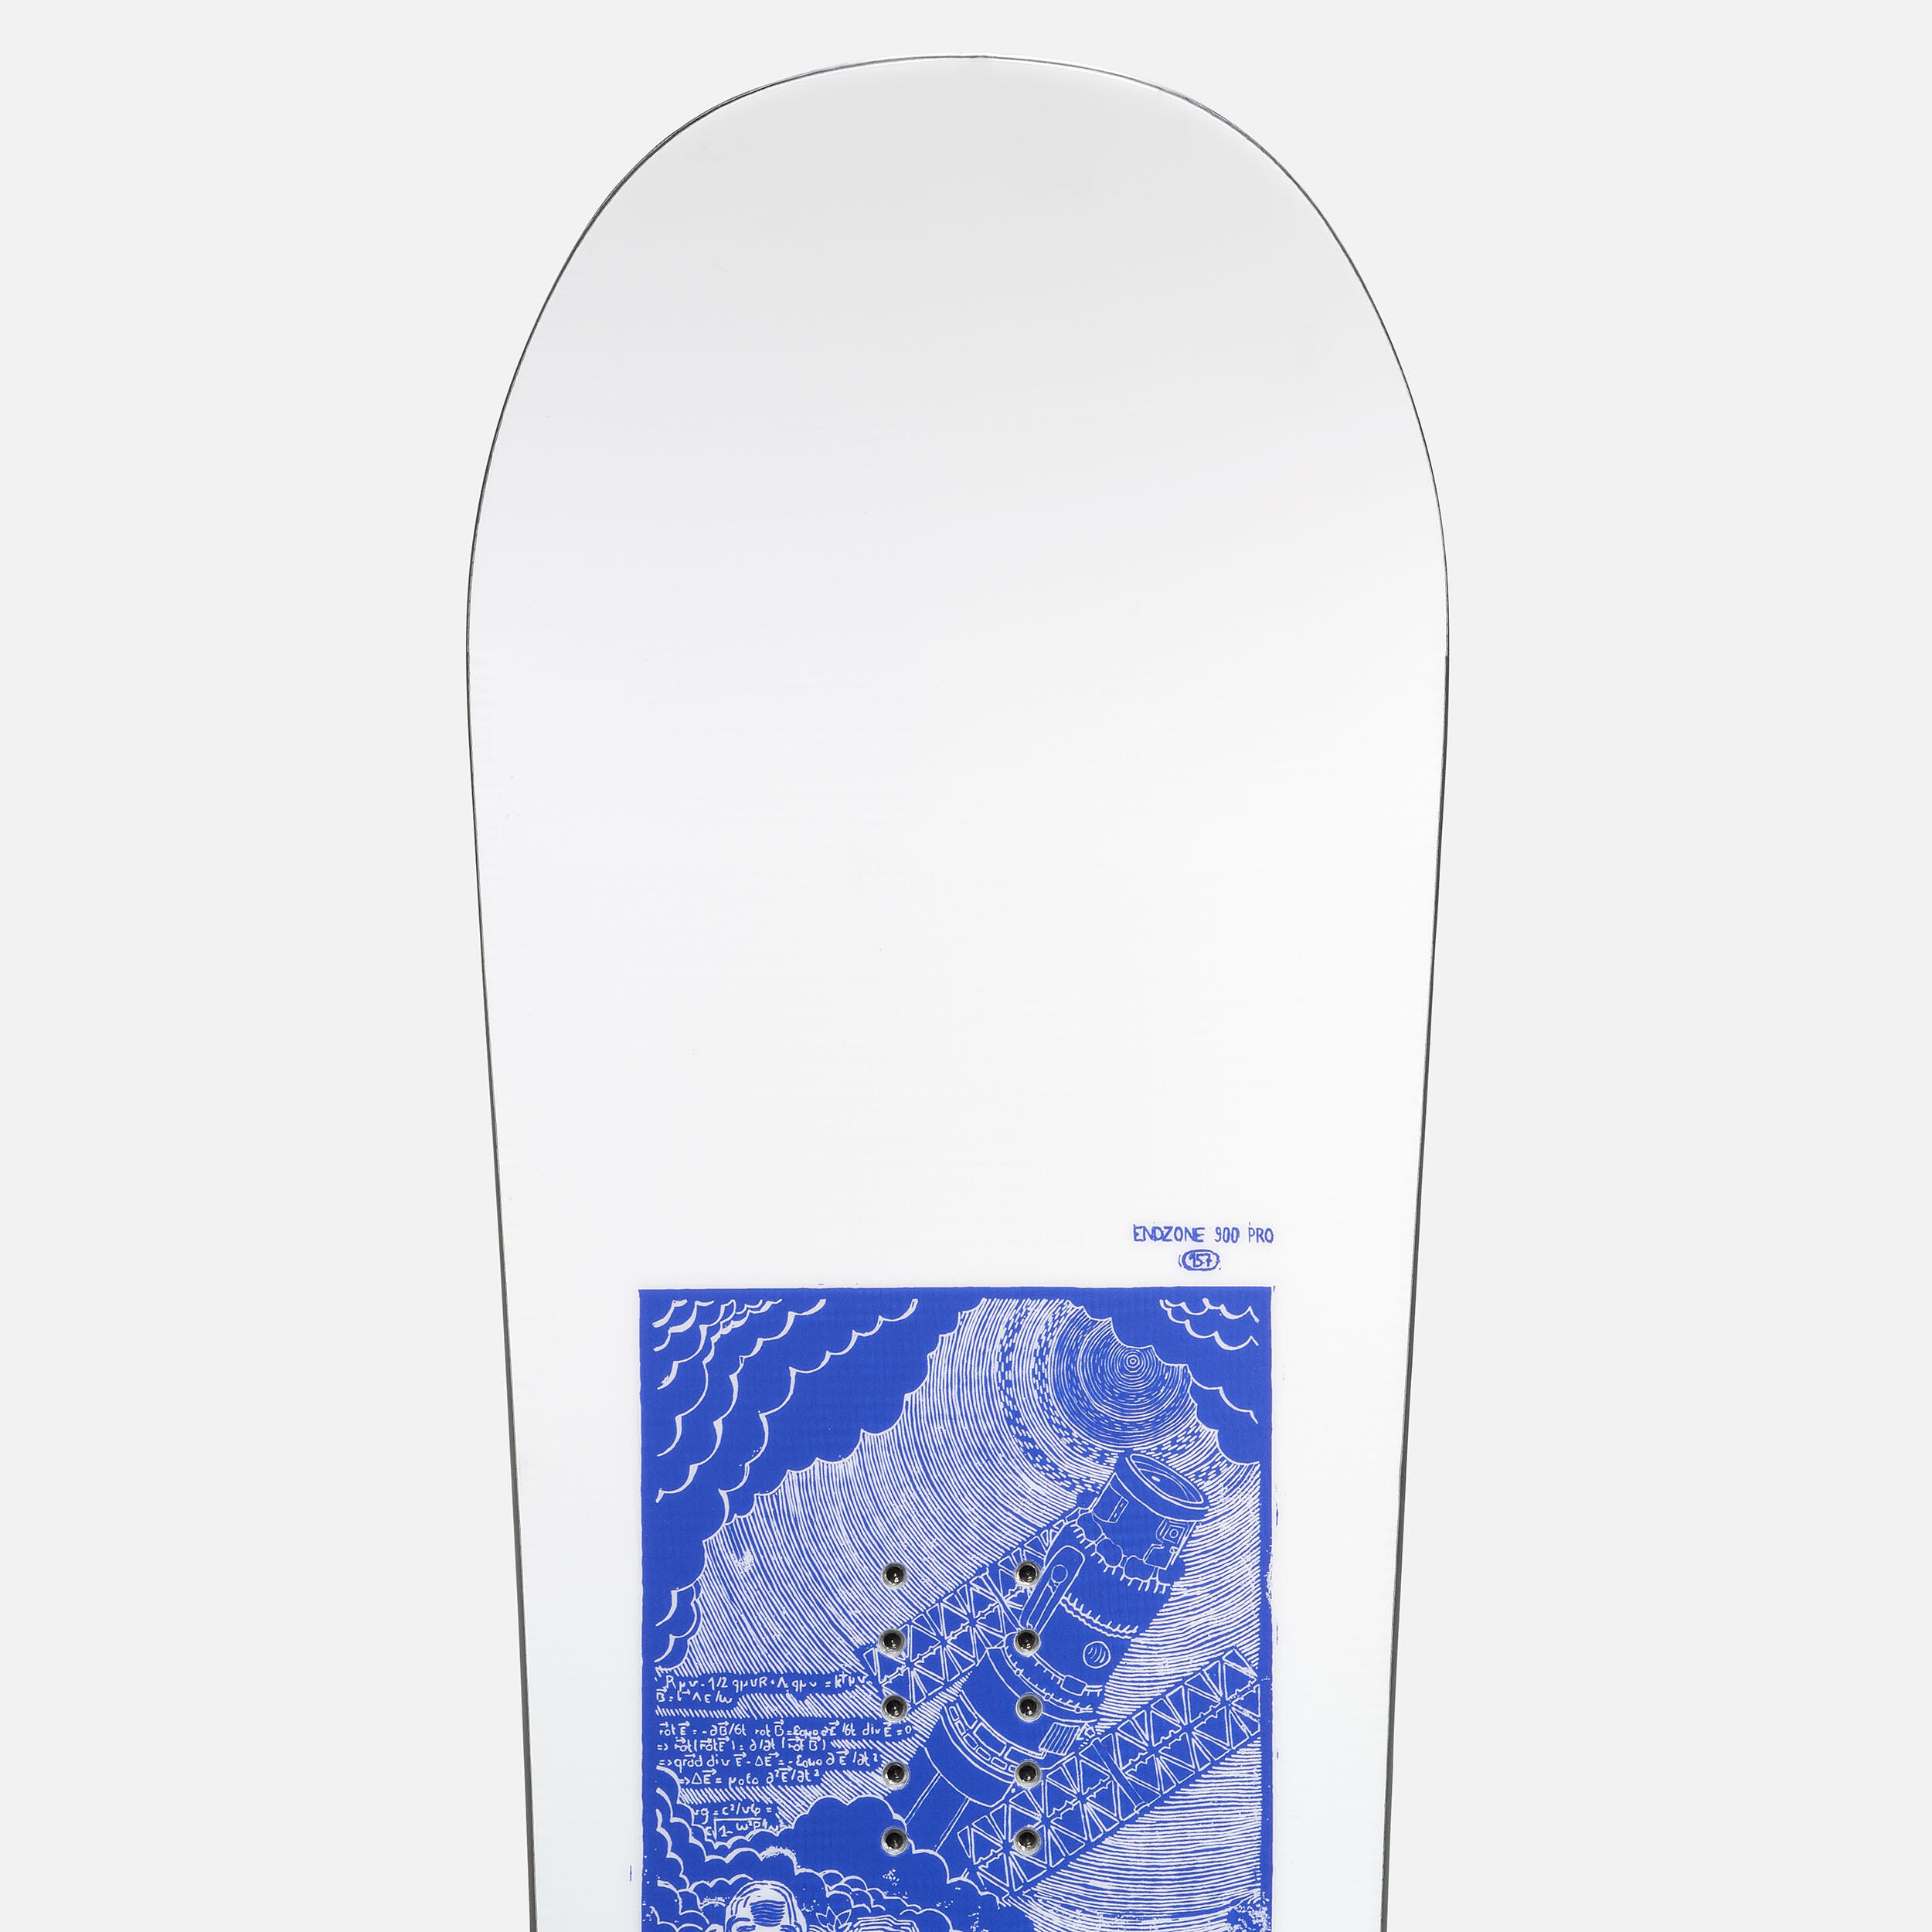 Freestyle snowboard – Endzone 900 PRO – Enzo Valax 9/14